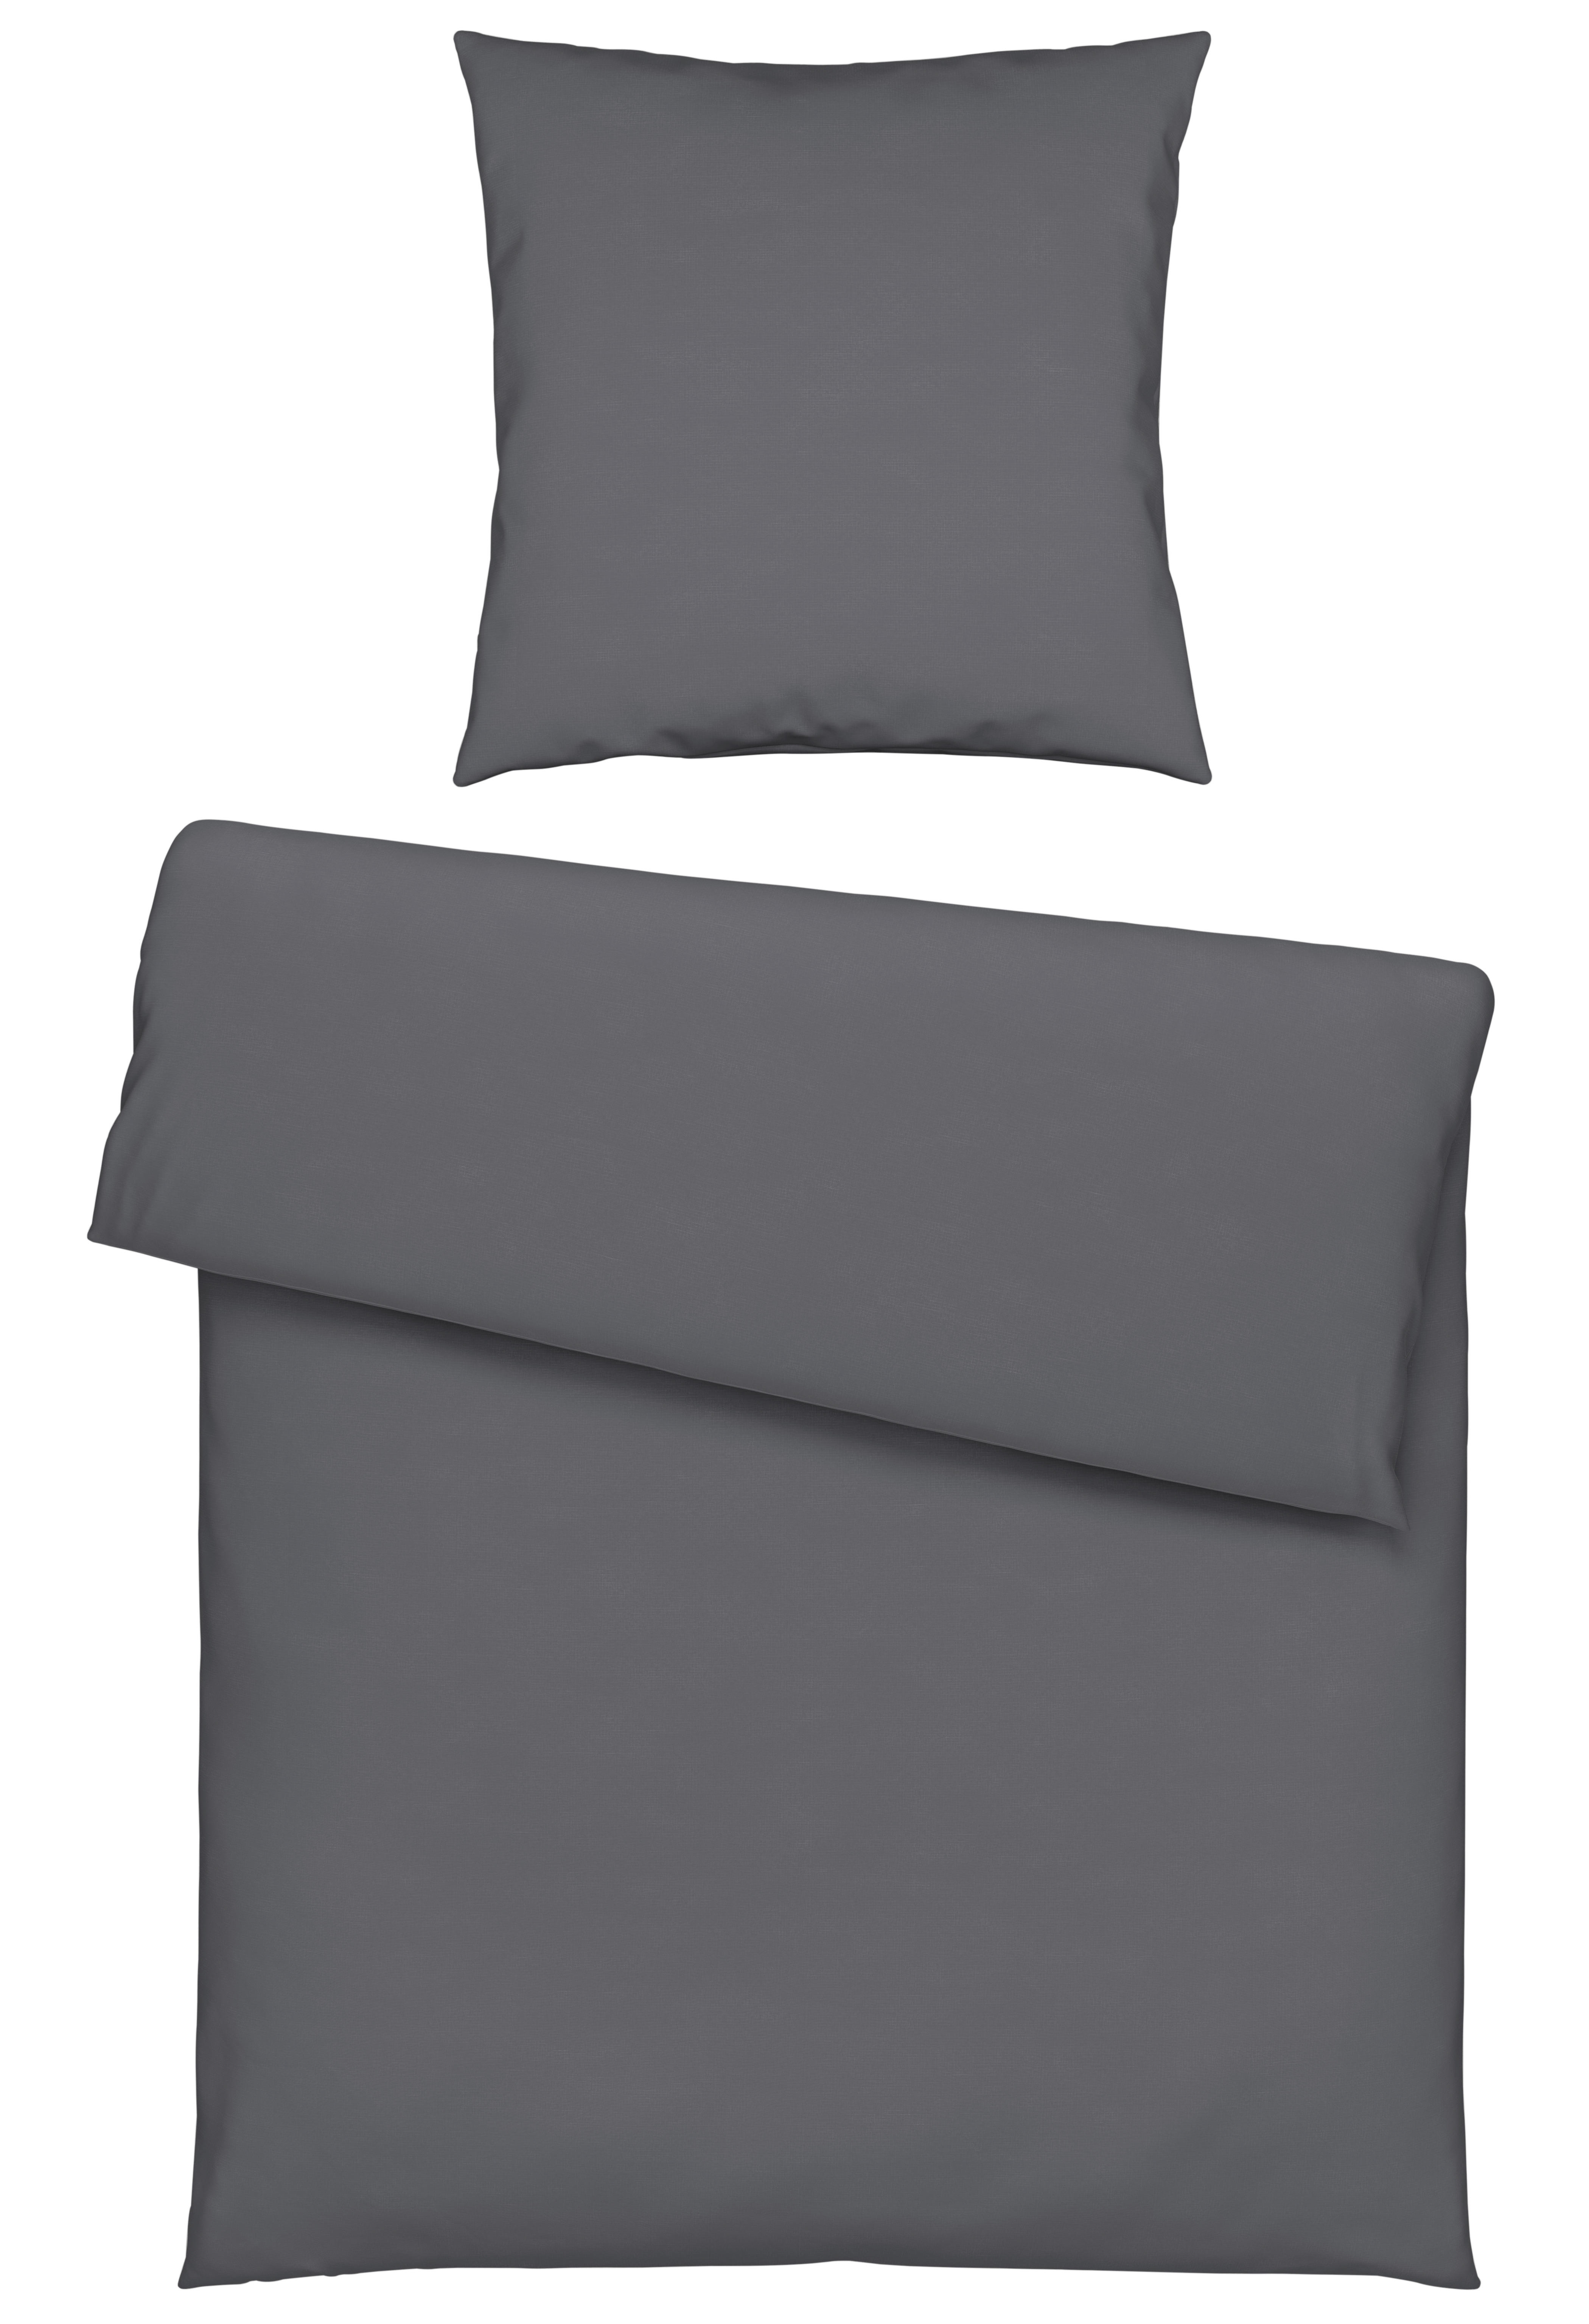 POSTELJINA 135/200 cm  - antracit, Konvencionalno, tekstil (135/200cm) - Novel